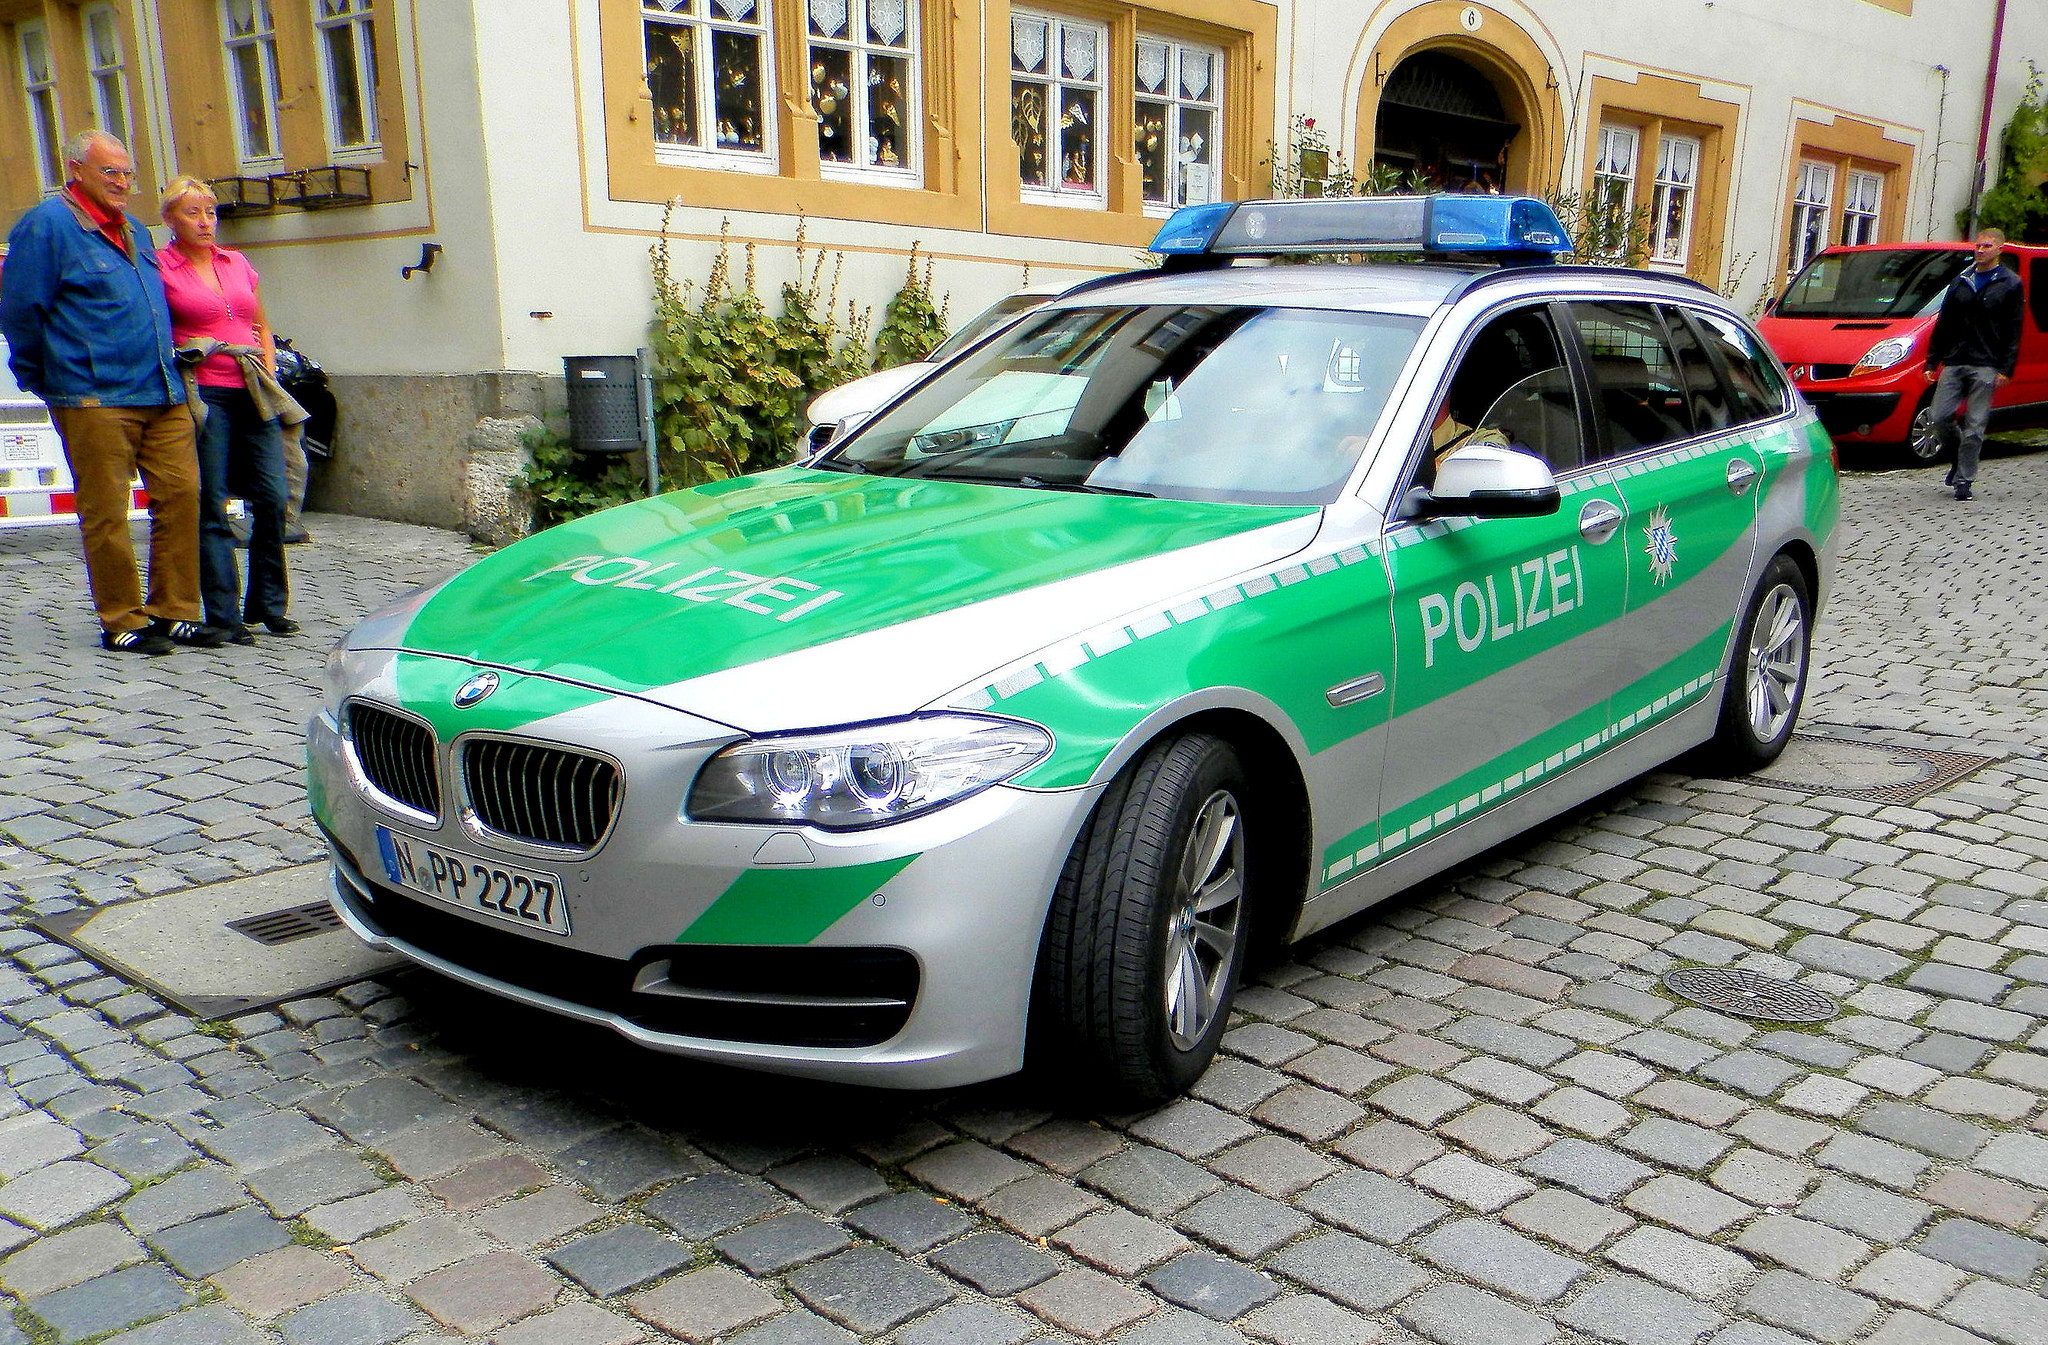 Авто де в германии на русском. BMW Polizei. Немецкие БМВ Polizei. BMW 535i Polizei. BMW 5 Series Polizei.